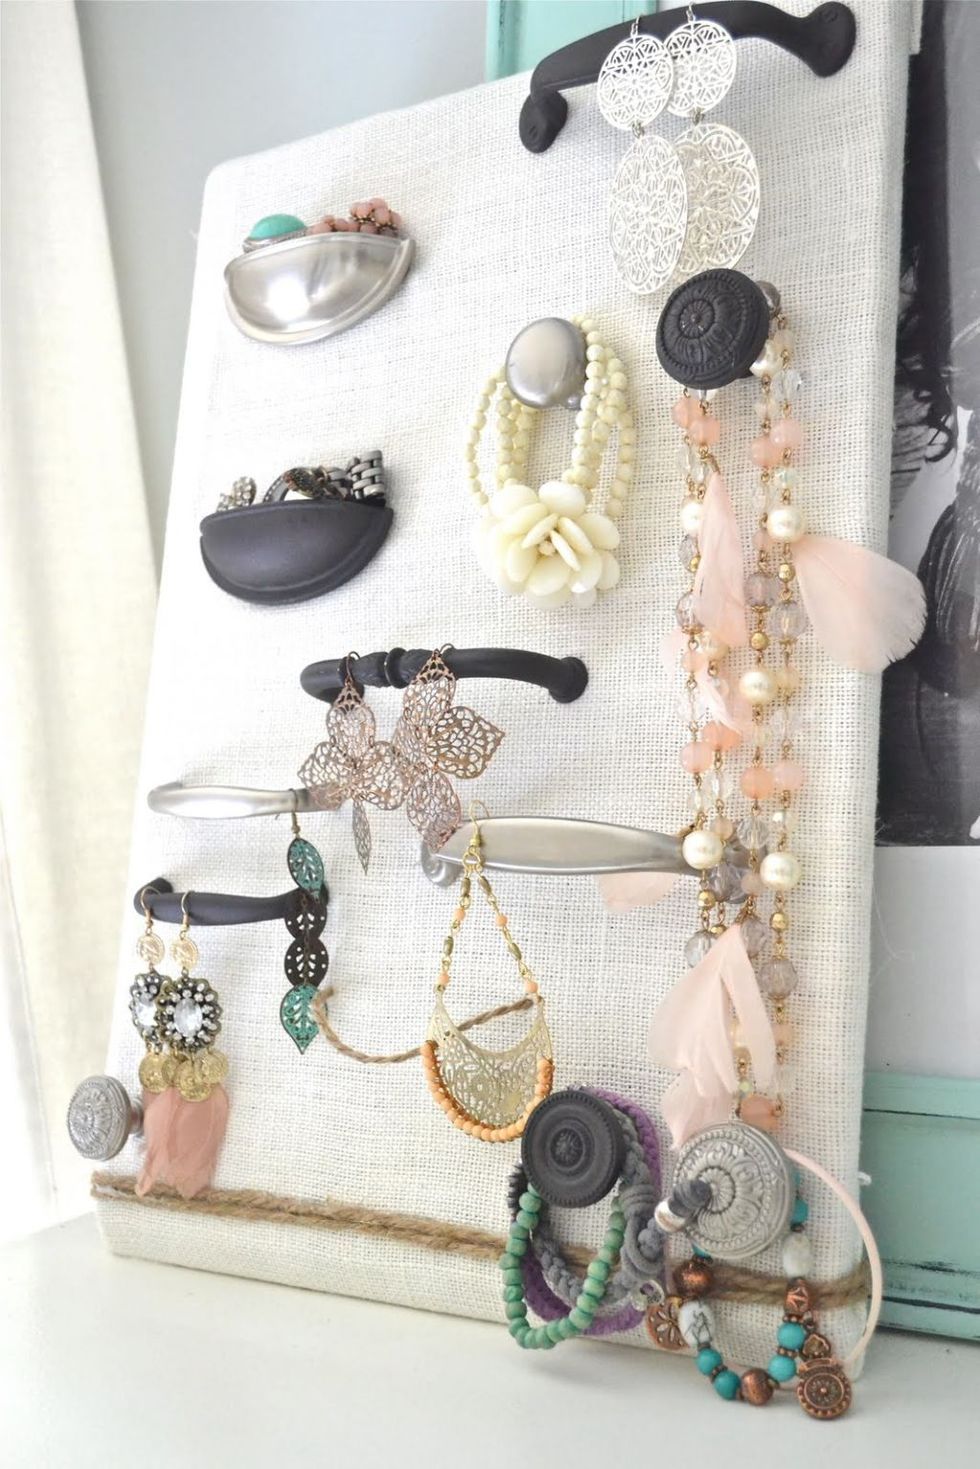 DIY jewelry storage ideas  Creative ways to display and organize